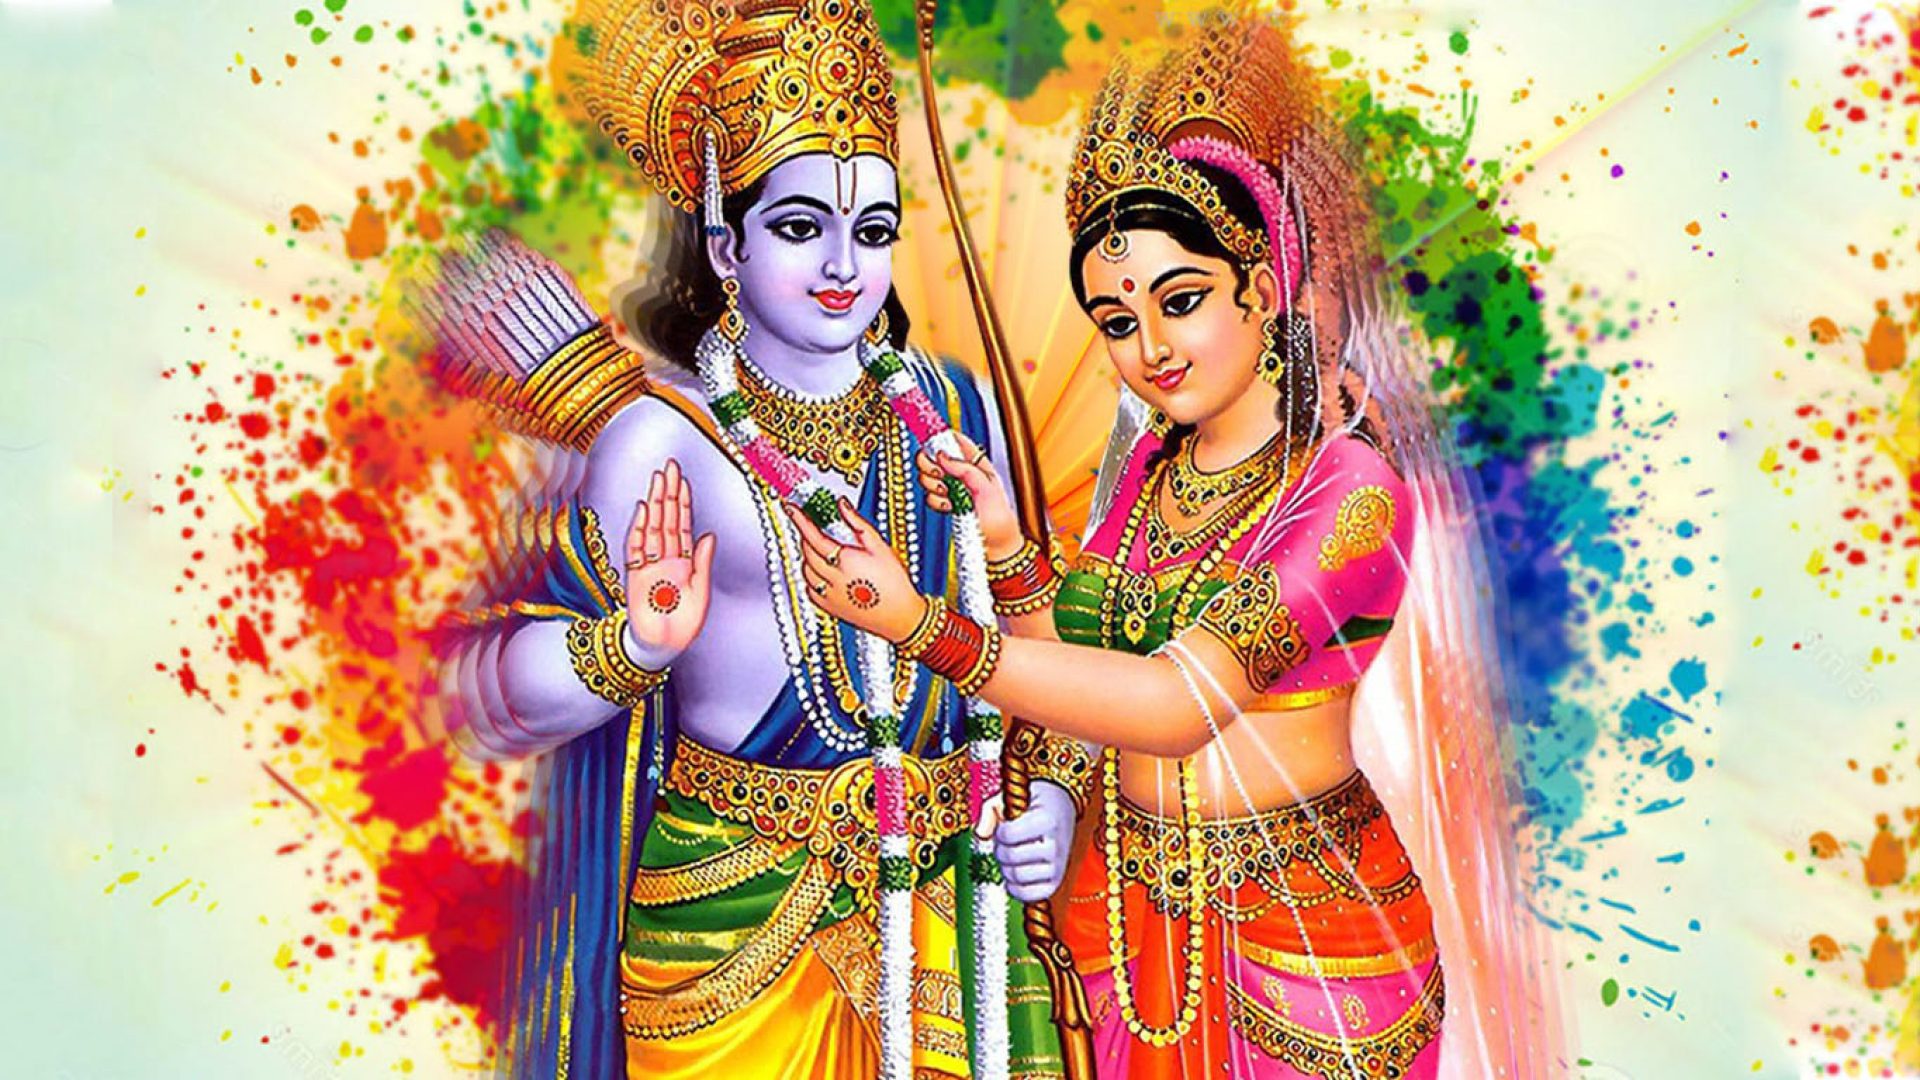 भगवान राम सीताको दर्शन गरि भदौ १३ गते शनिवार (आज) को राशिफल हेनुहोस्